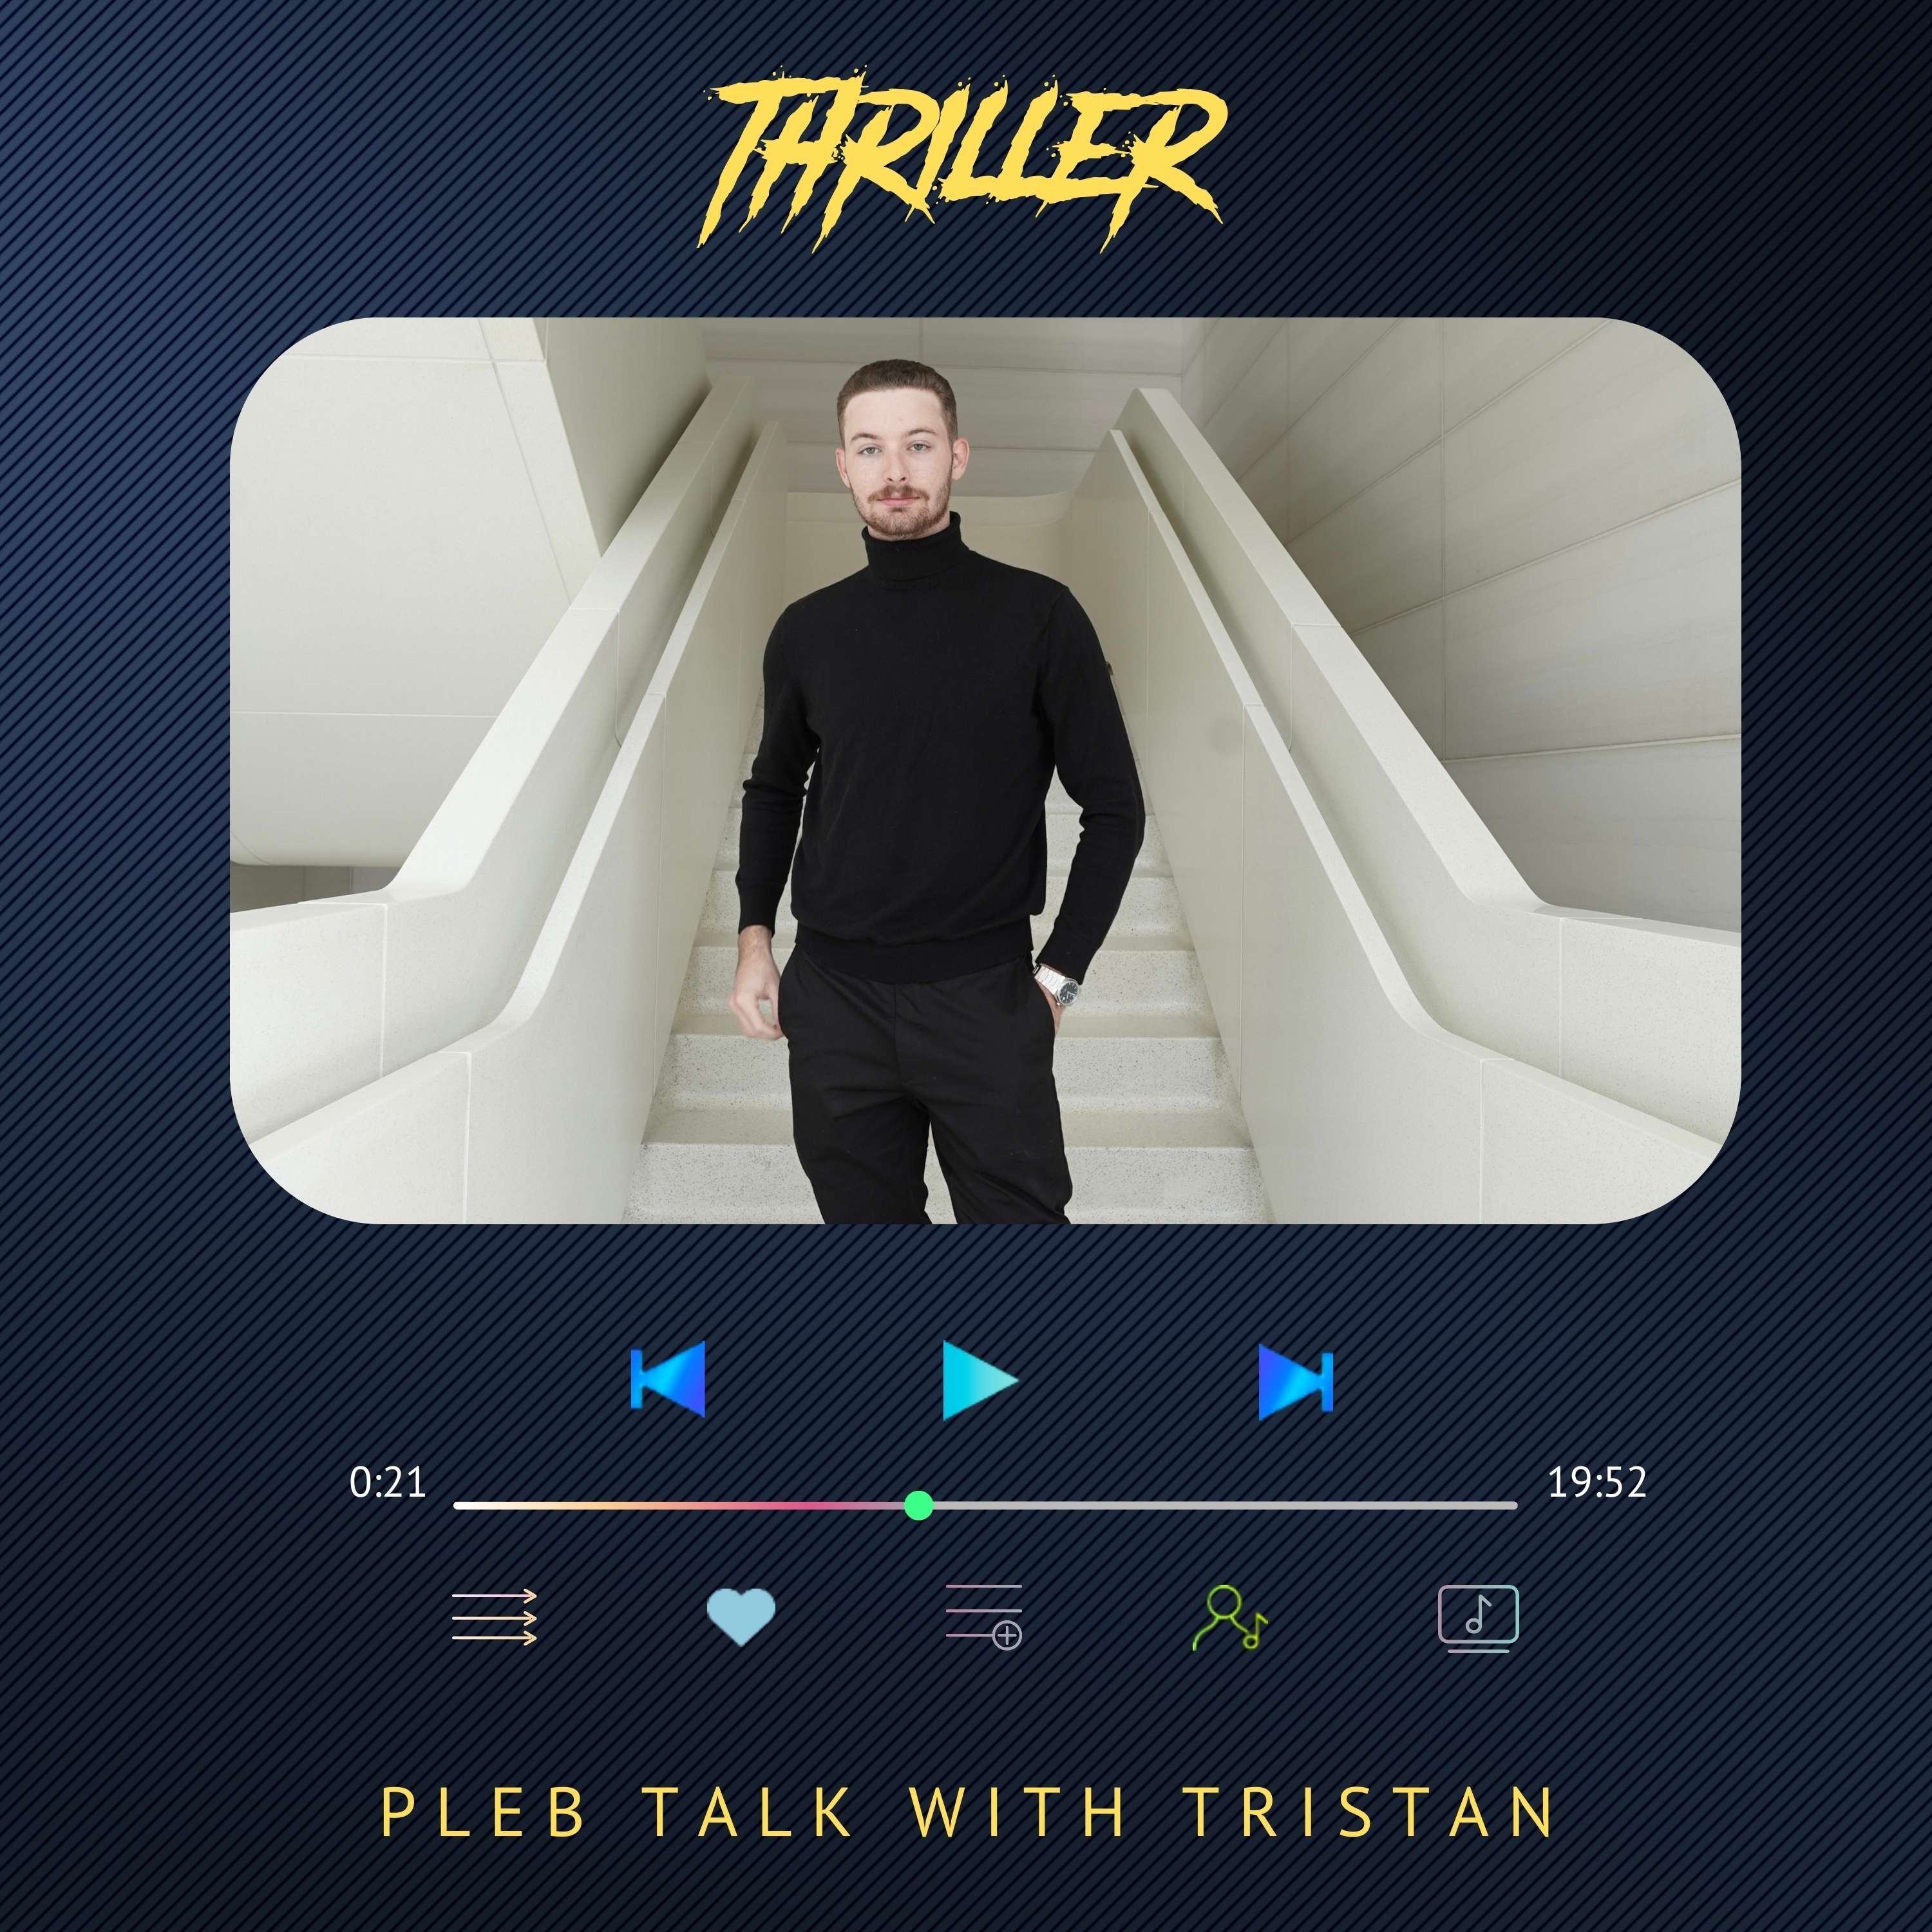 Pleb talk with Tristan